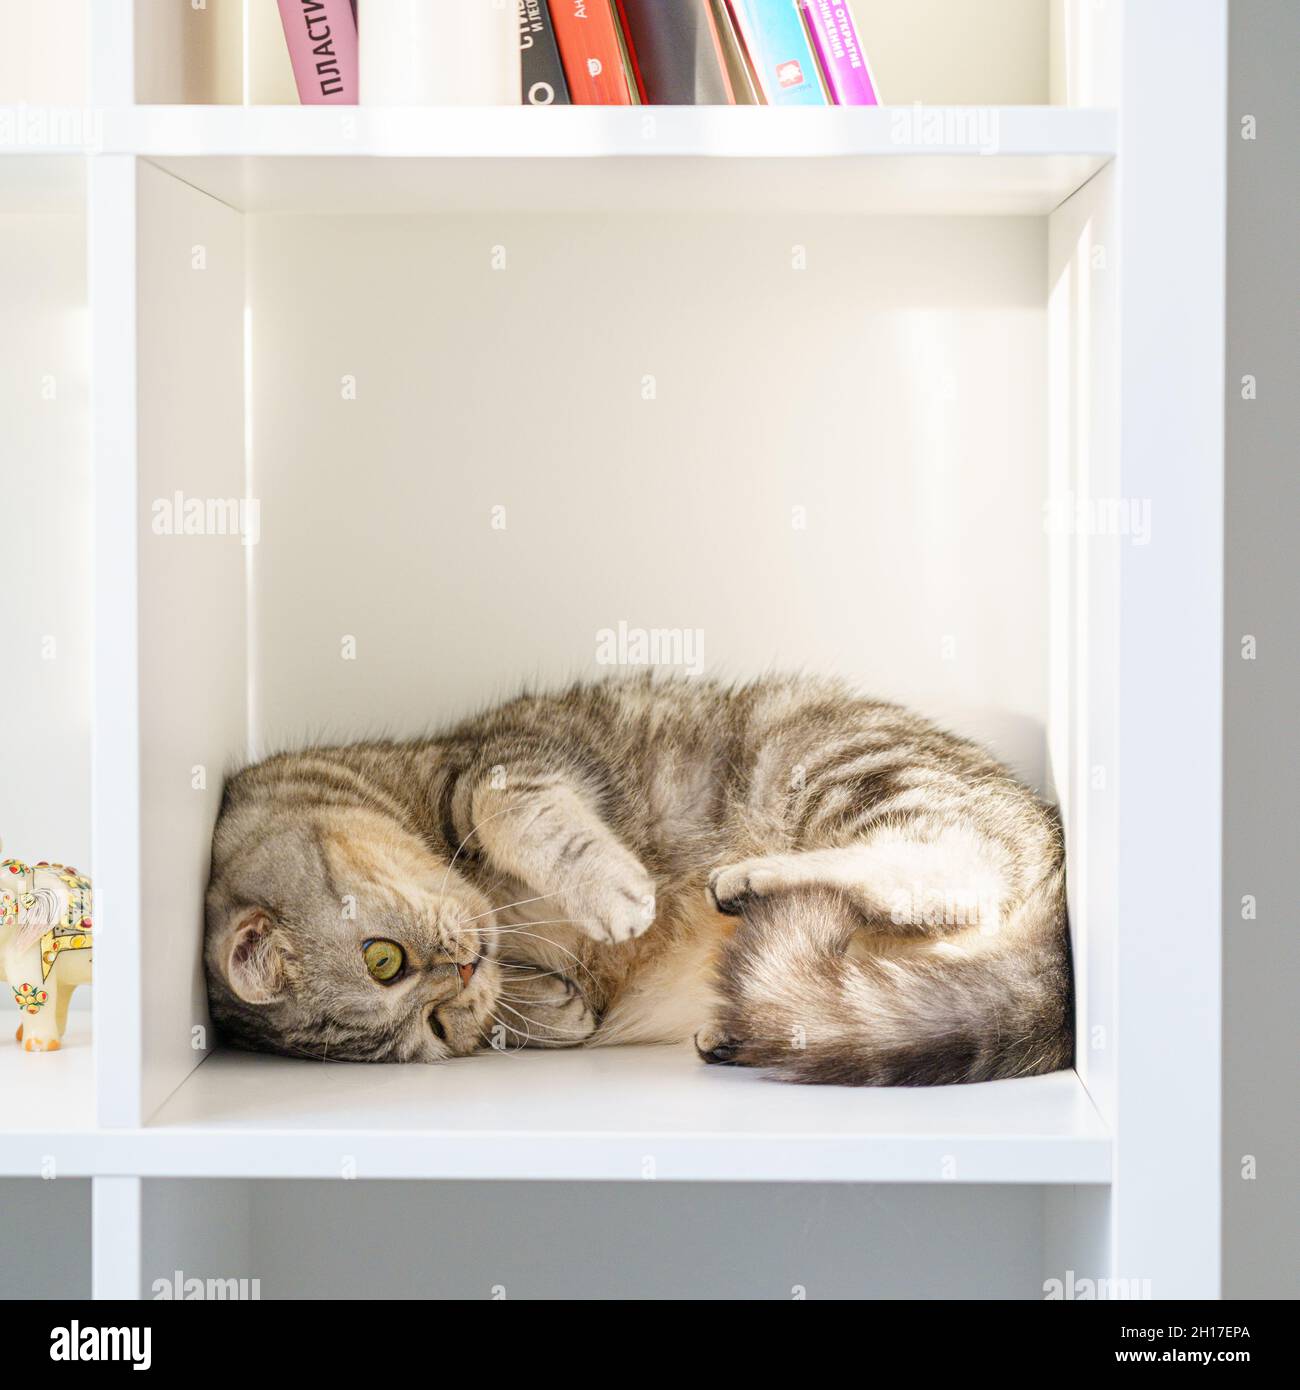 Die schottische geradlinige Katze liegt auf dem Regal, die Katze befindet  sich in einem geschlossenen engen Raum, in einer großen Schachtel oder Box  Stockfotografie - Alamy